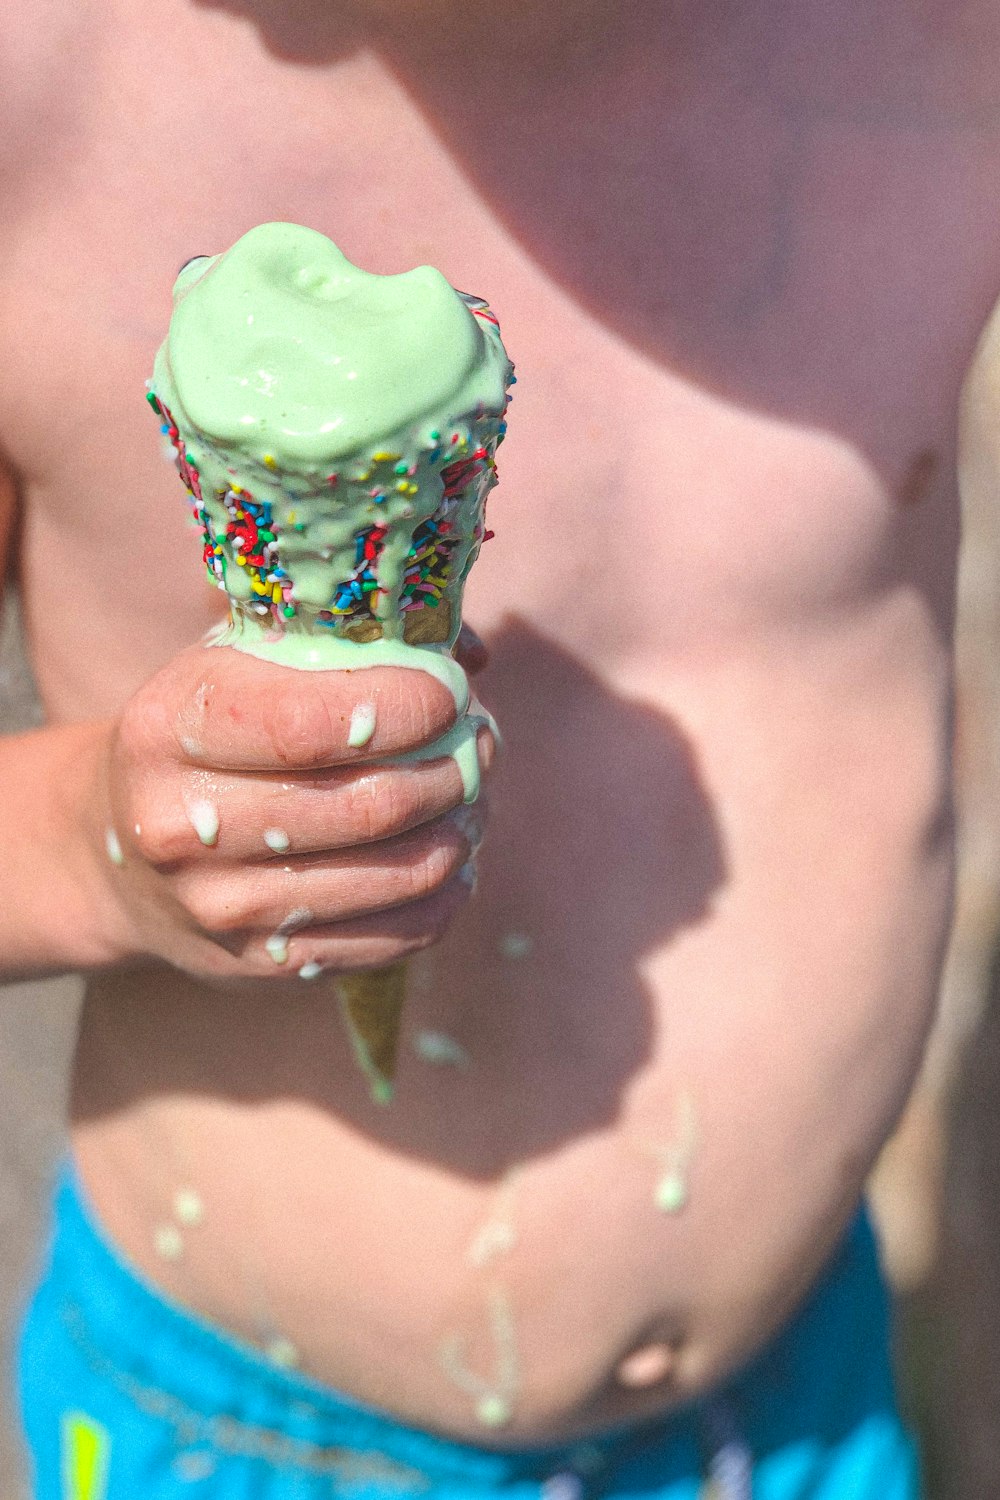 緑色のアイスクリームを持っている人